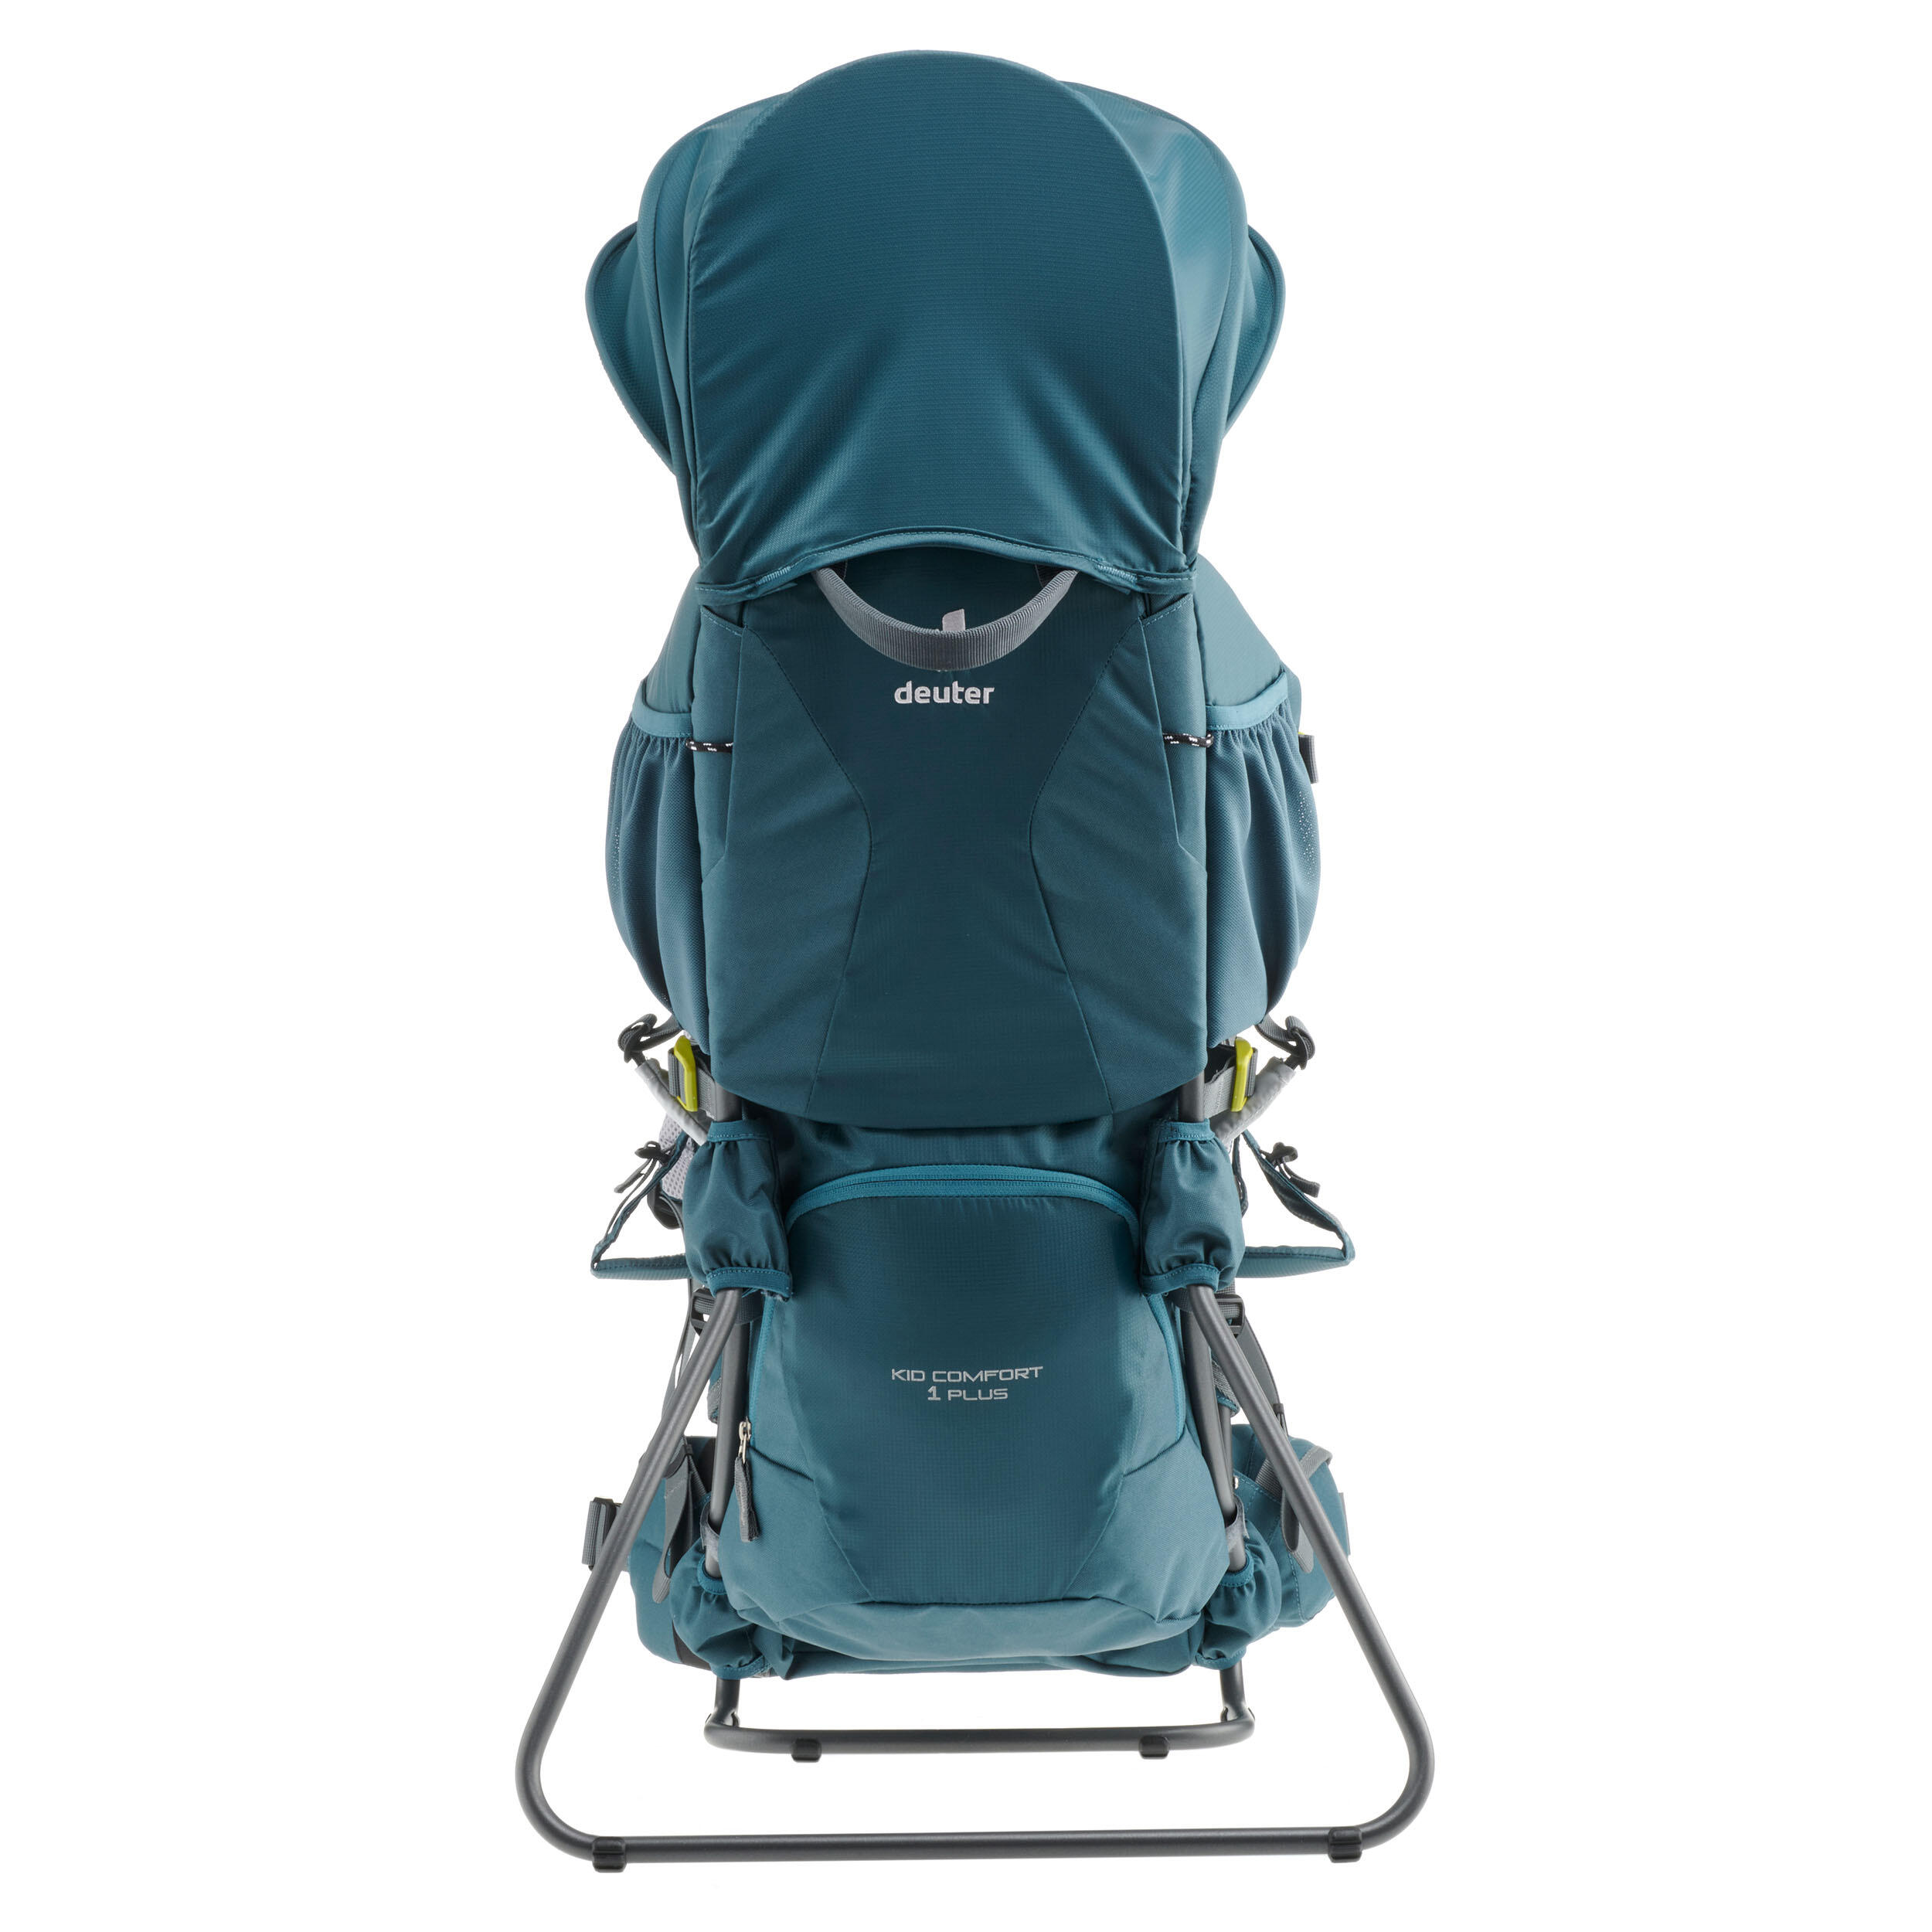 Rigid Baby Carrier - Deuter Kid Comfort 1 Plus 5/7